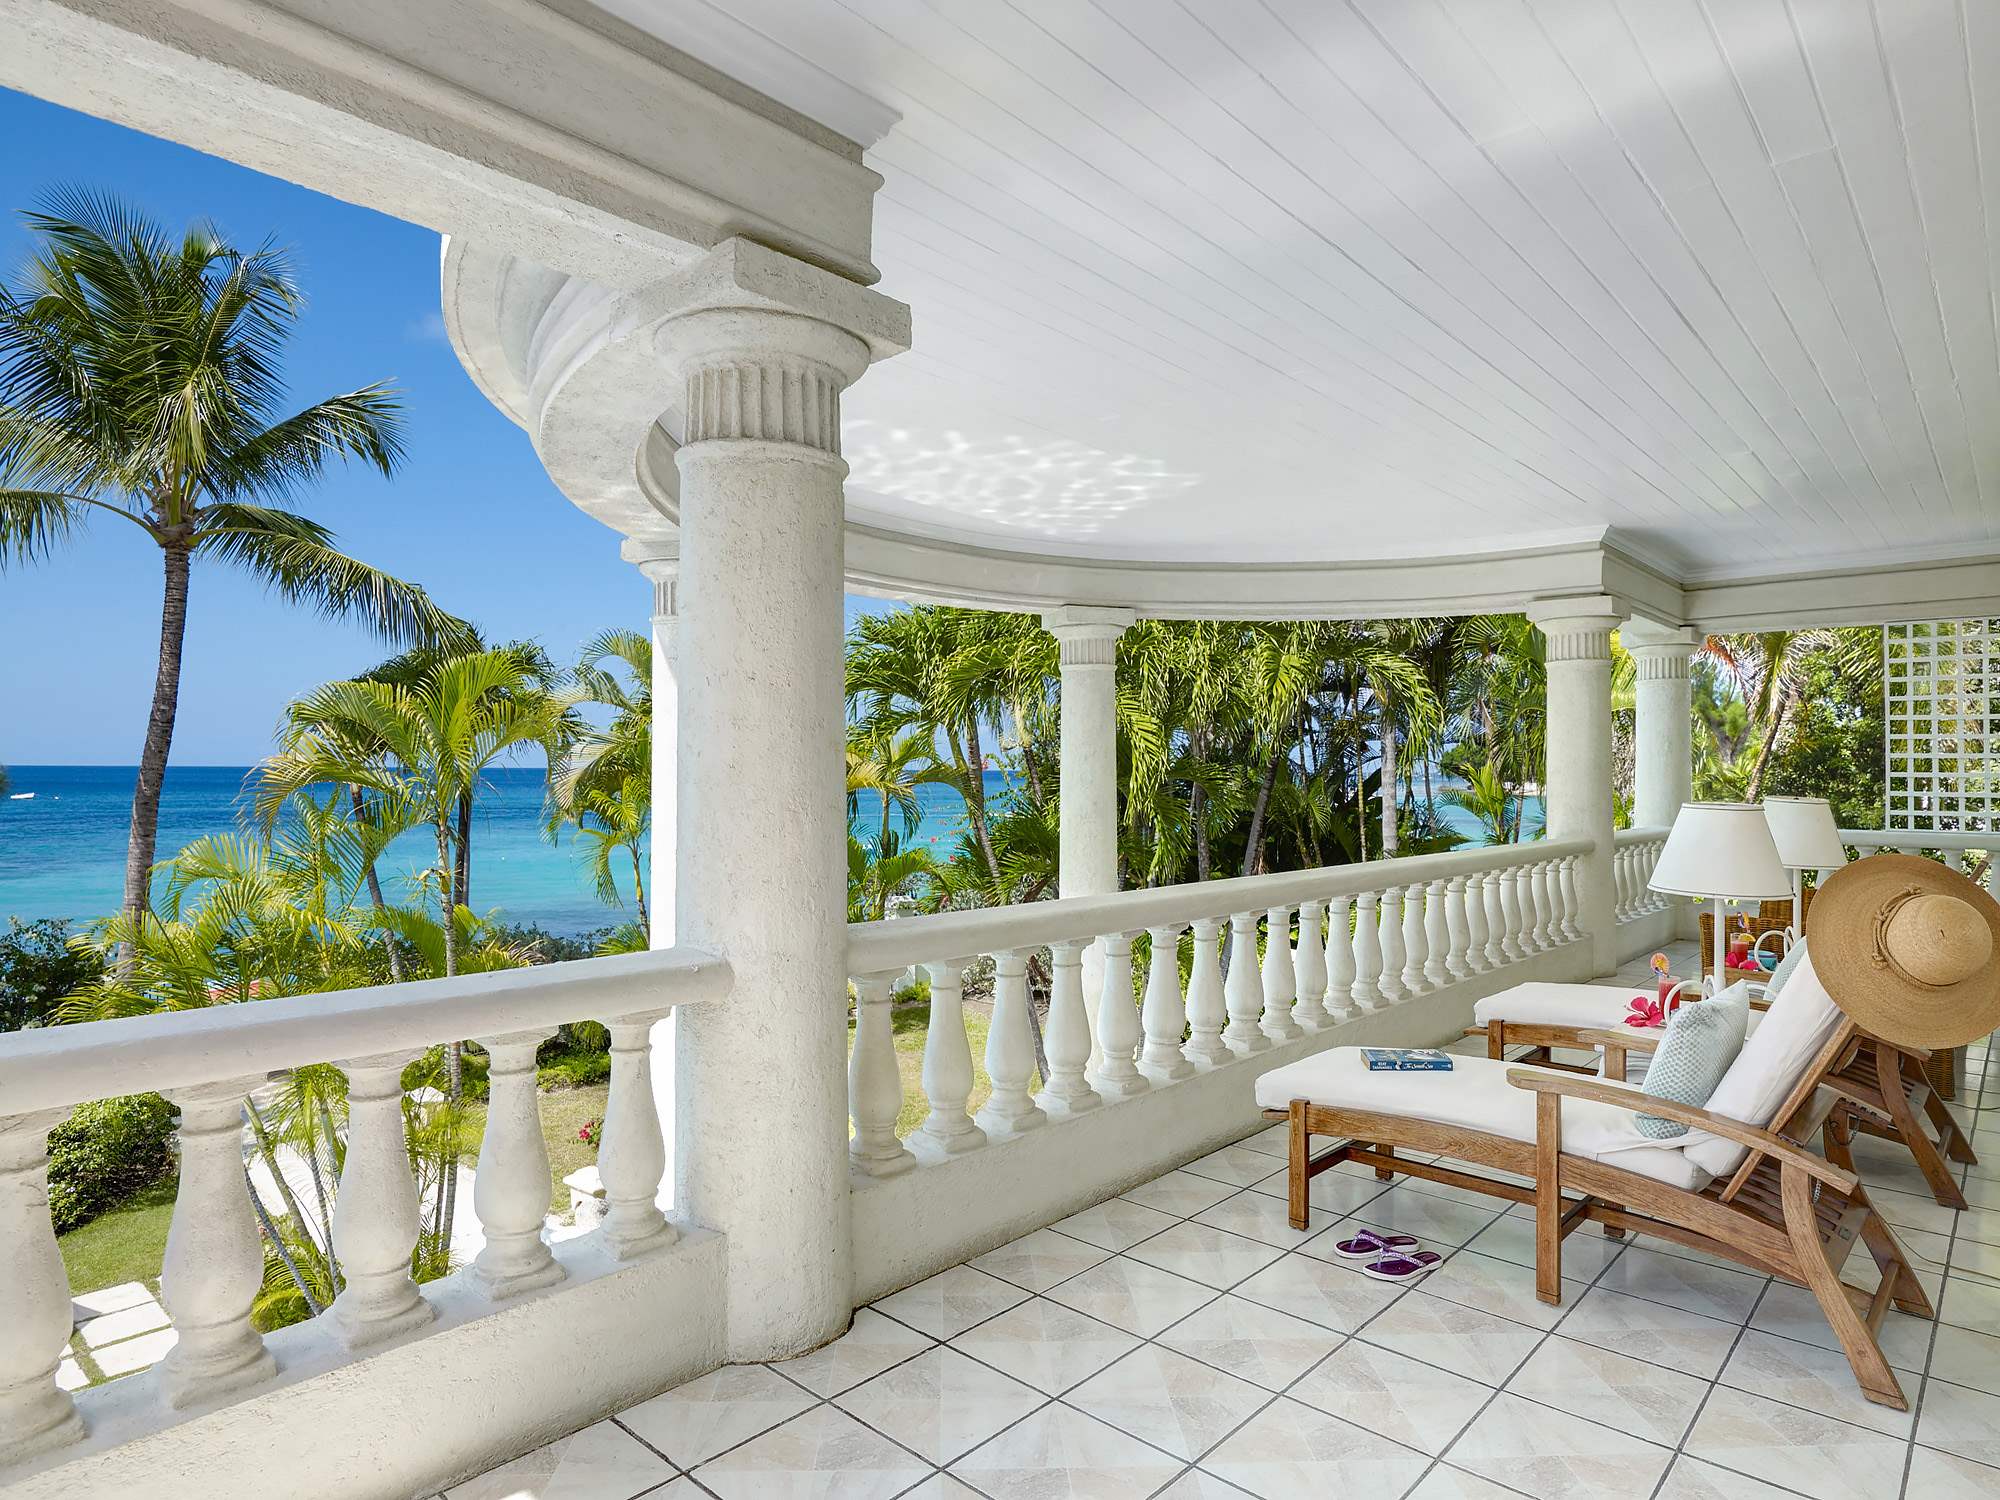 New Mansion, 4 bedroom villa in St. James & West Coast, Barbados Photo #11